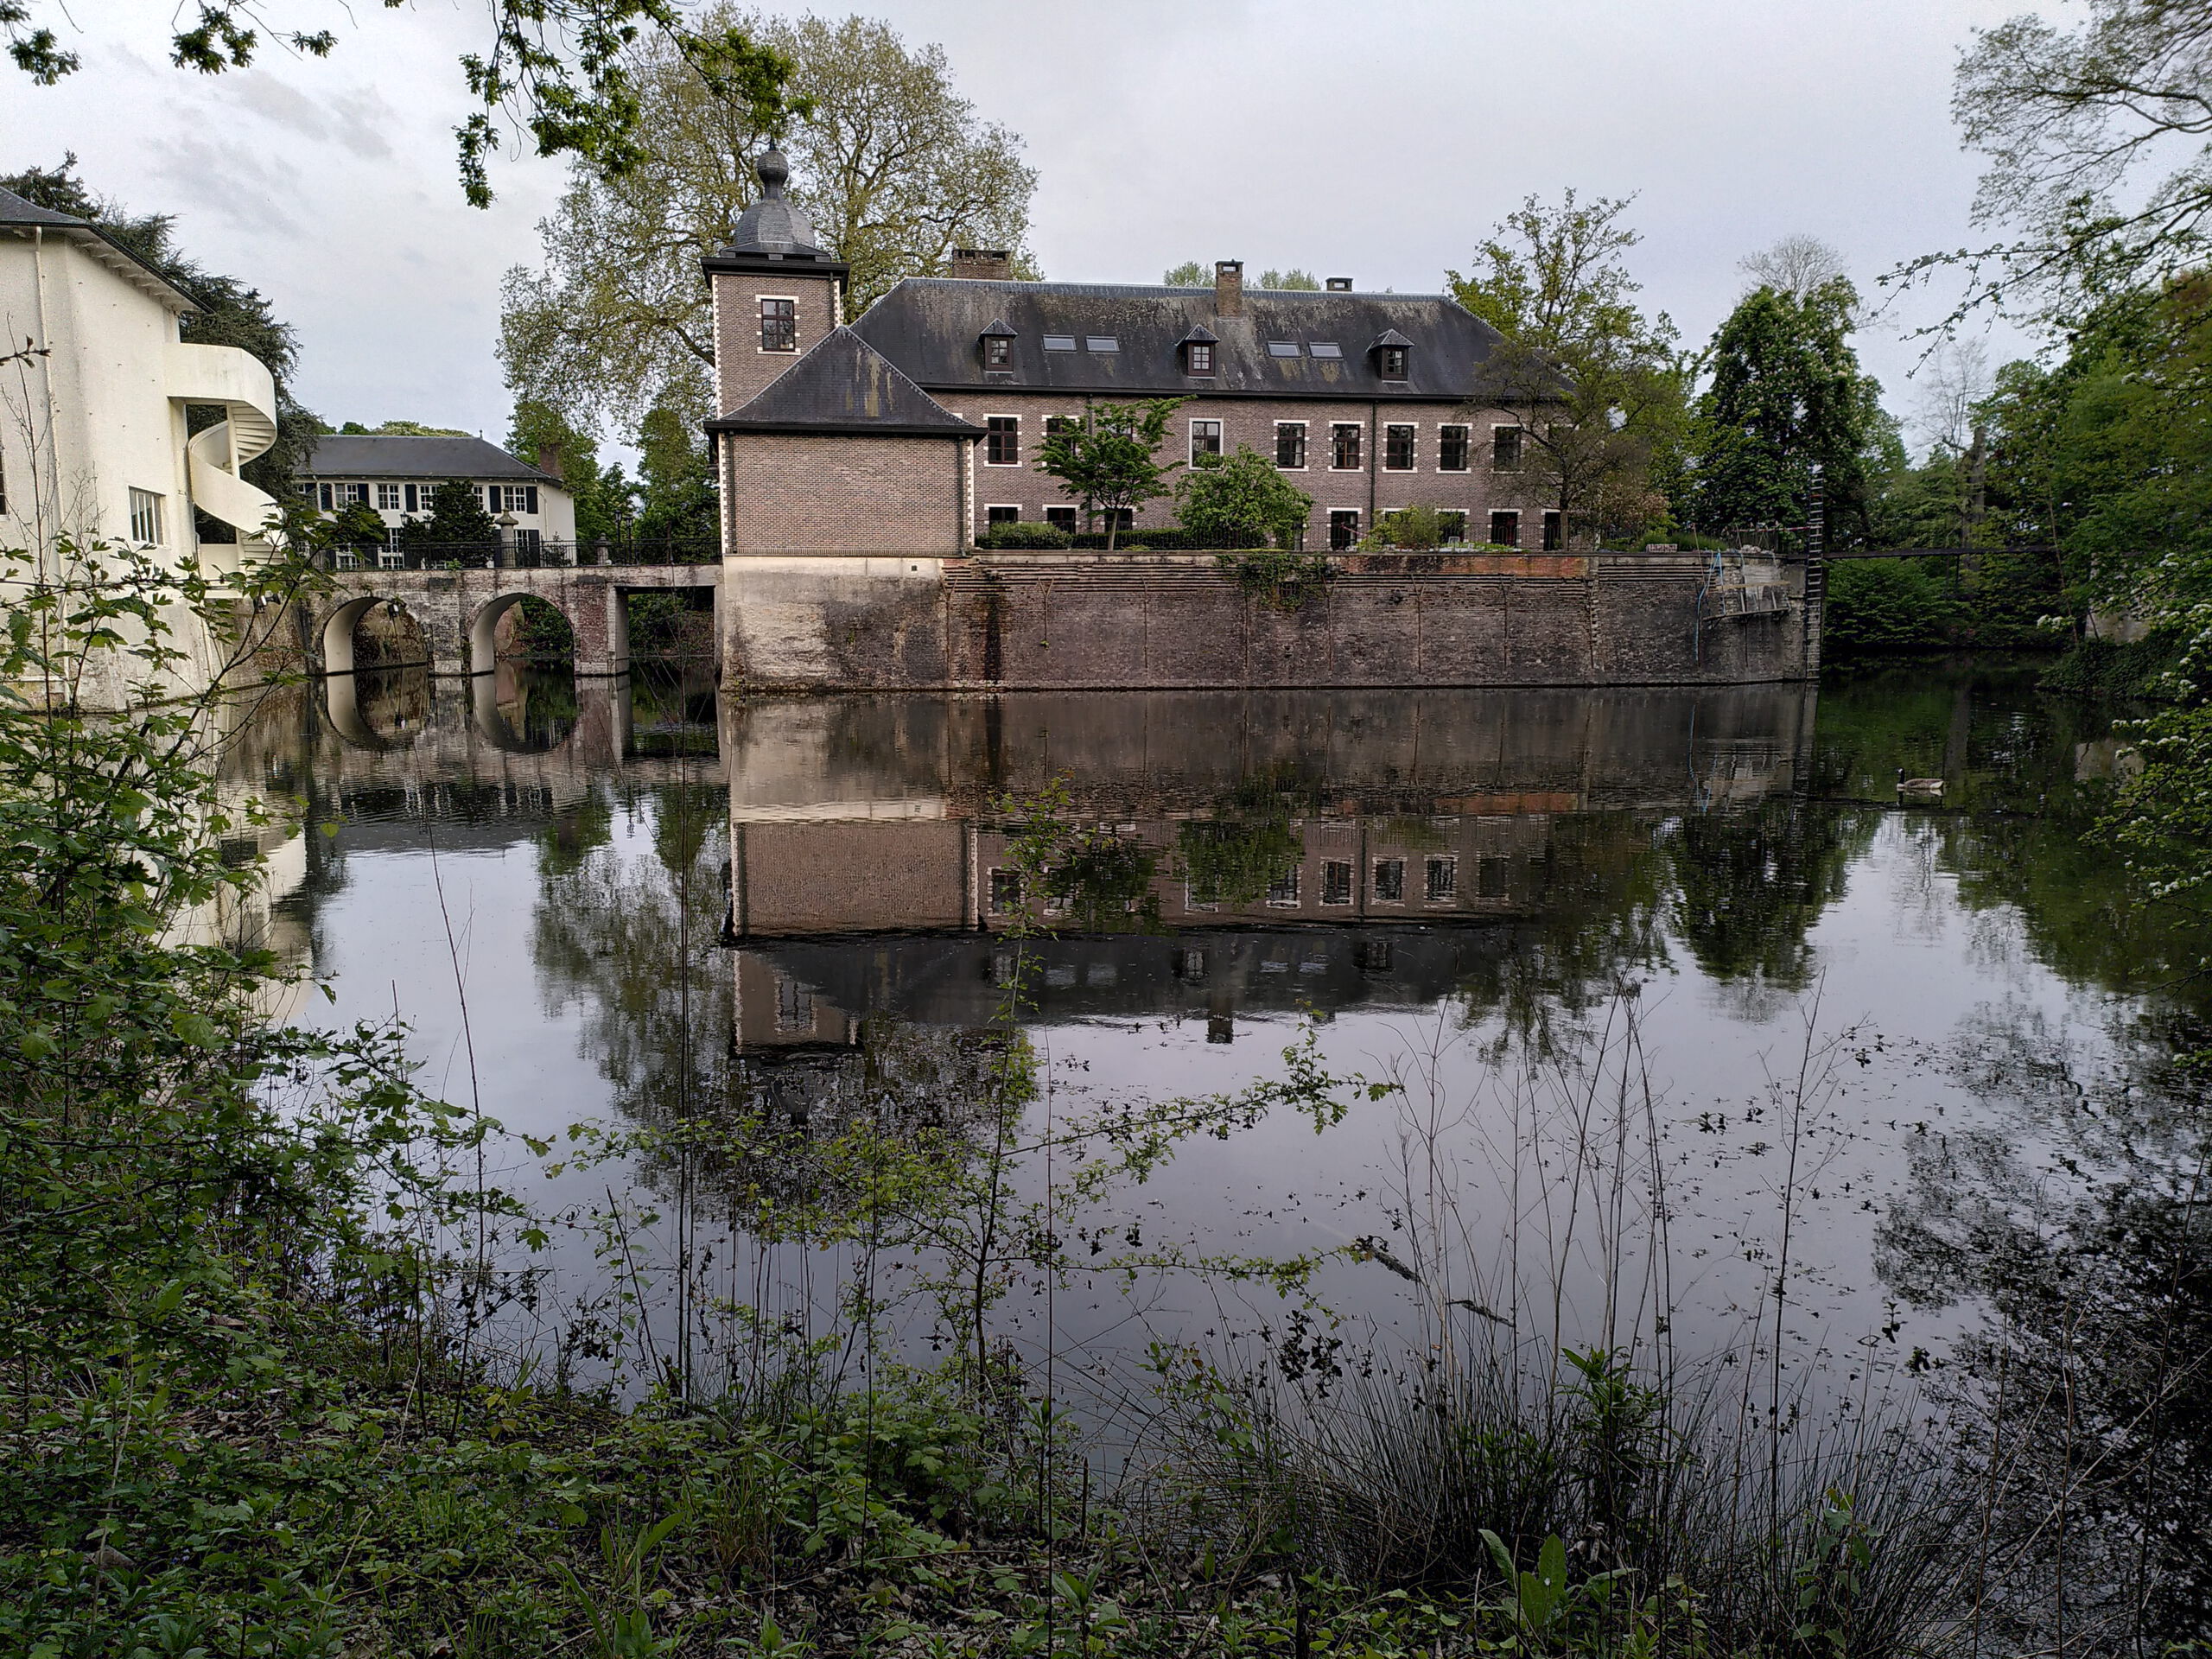 Wasserschloss Hof Zevenbergen in Ranst, Belgien. Wasser, Wald, Stille und Gemeinschaft.